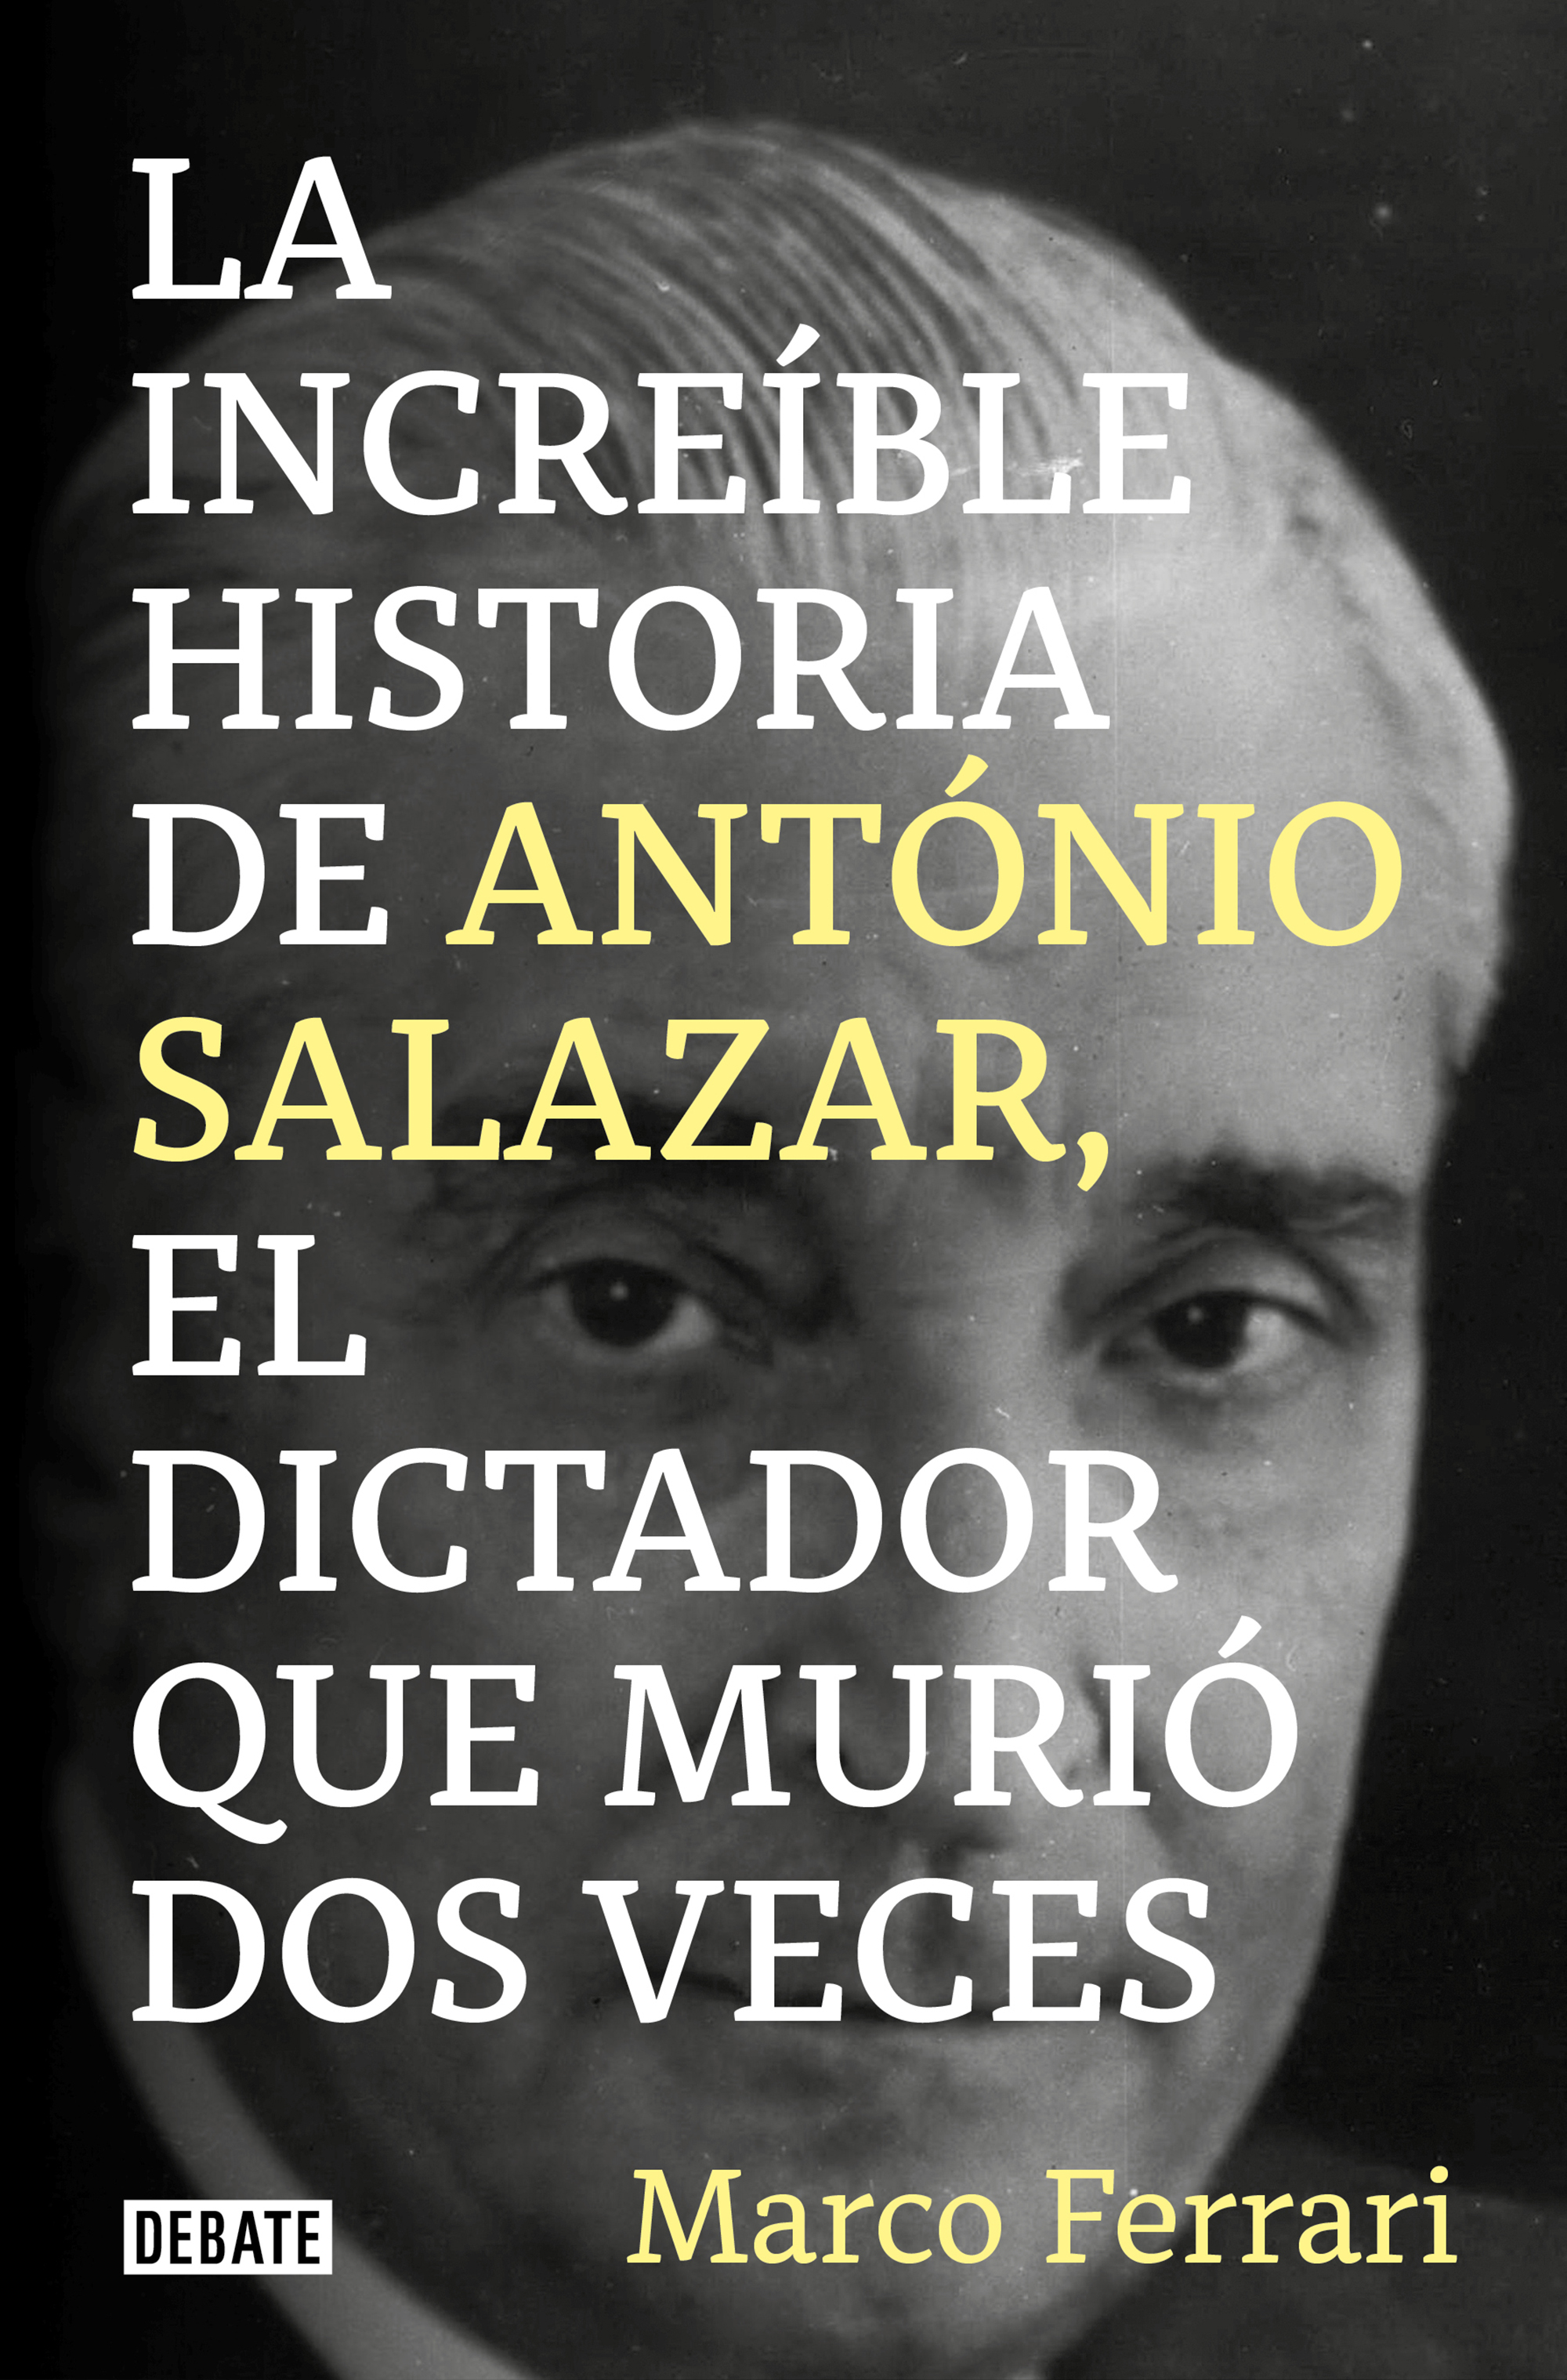 La increíble historia de Antonio Salazar, el dictador que murió dos veces